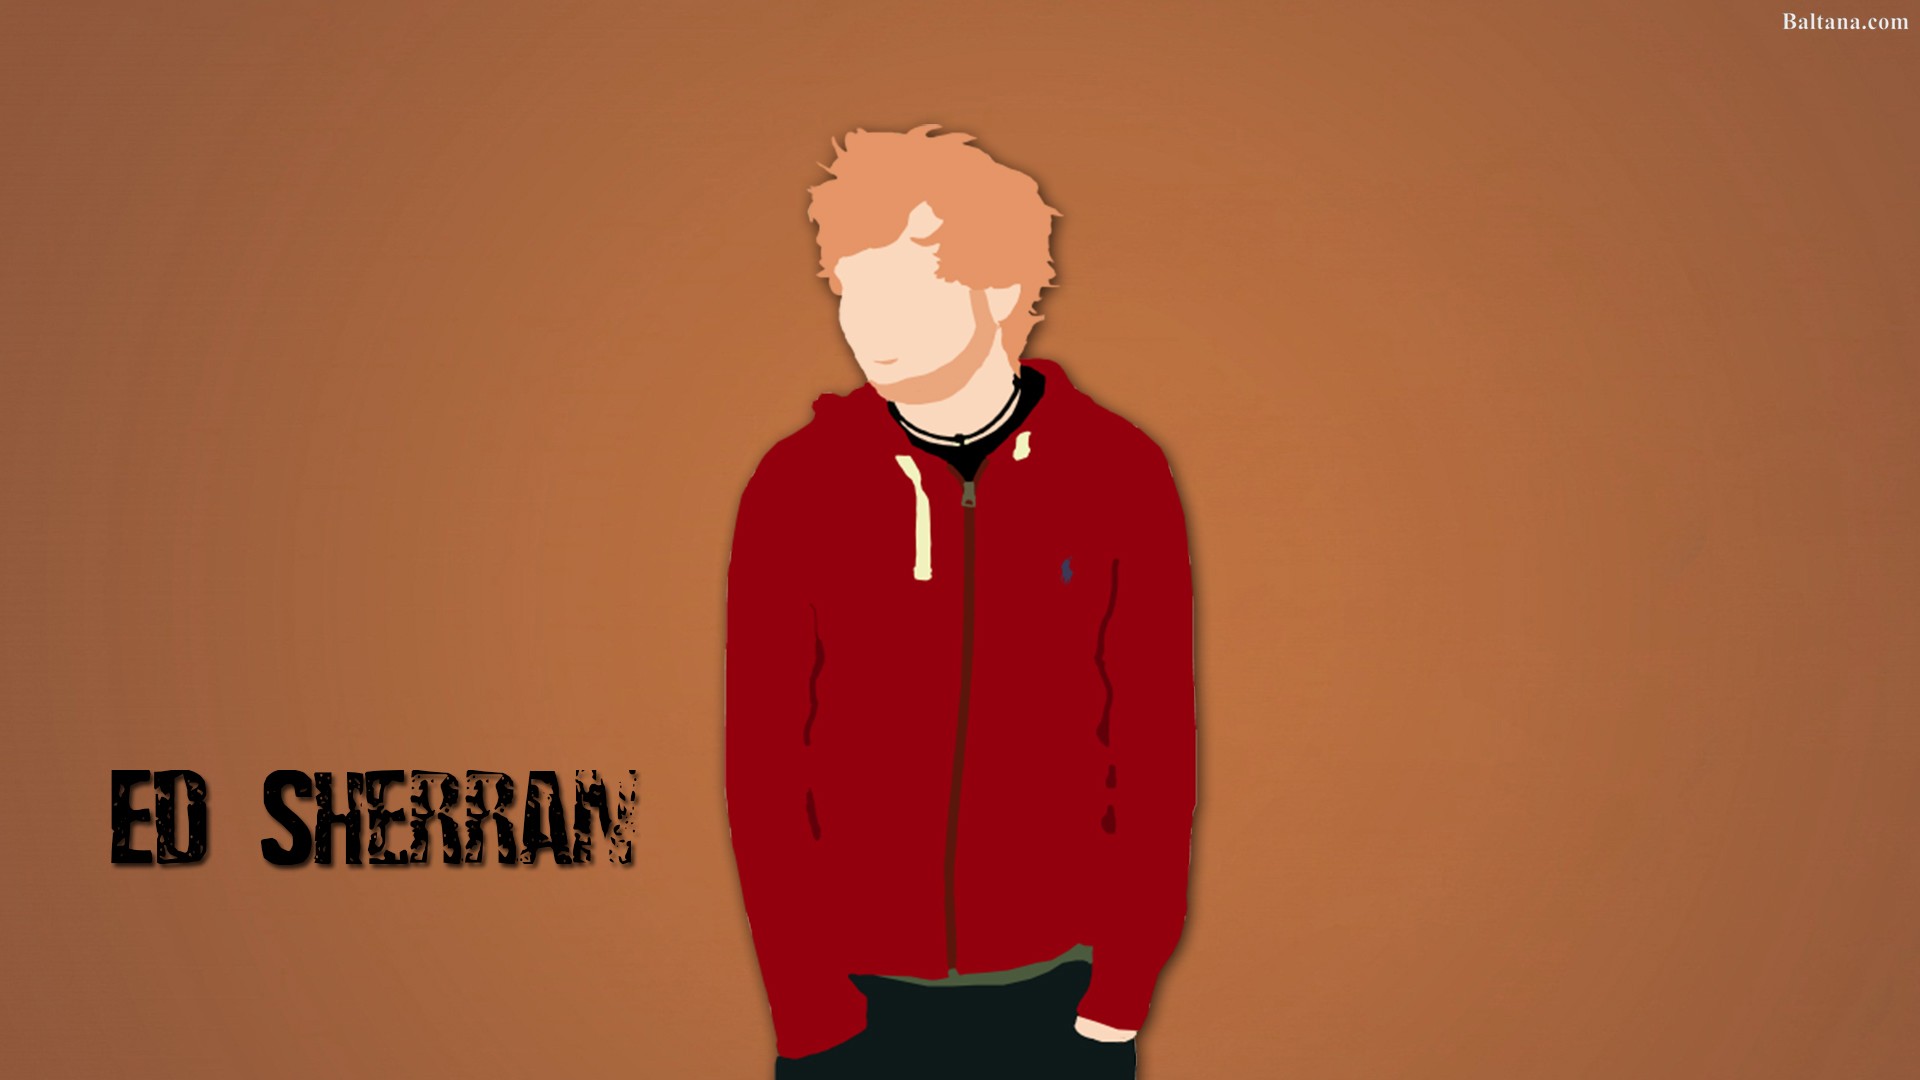 Ed Sheeran HQ Desktop Wallpaper 30348